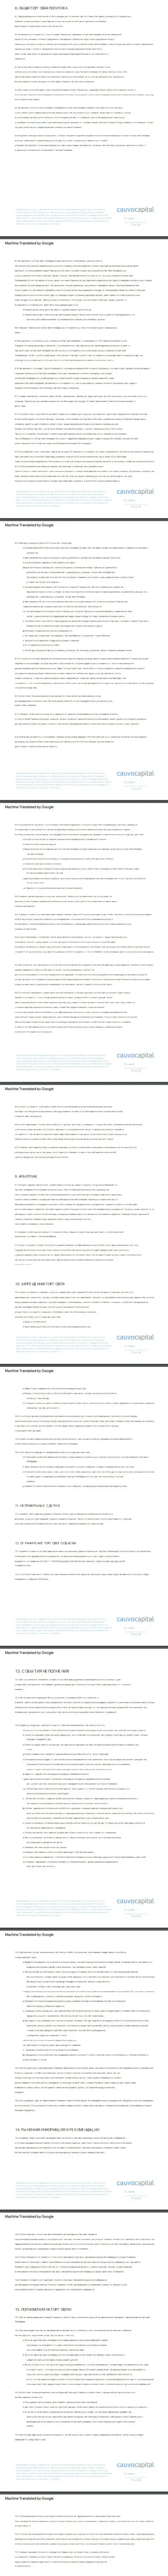 Вторая часть соглашения компании Cauvo Capital